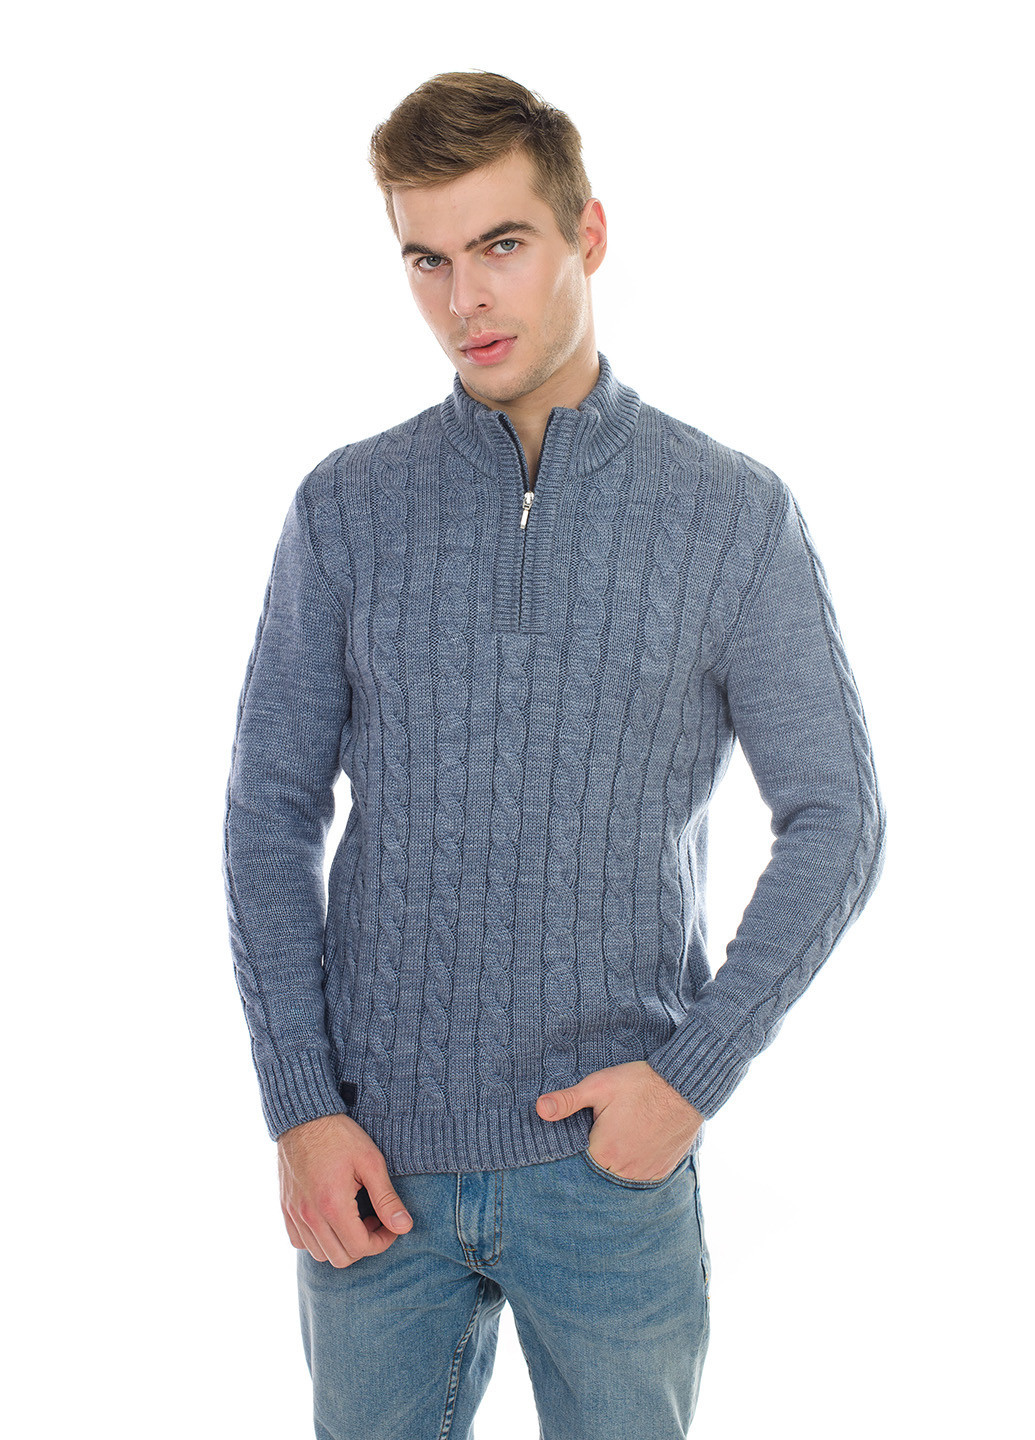 Серо-голубой теплый свитер с молнией SVTR